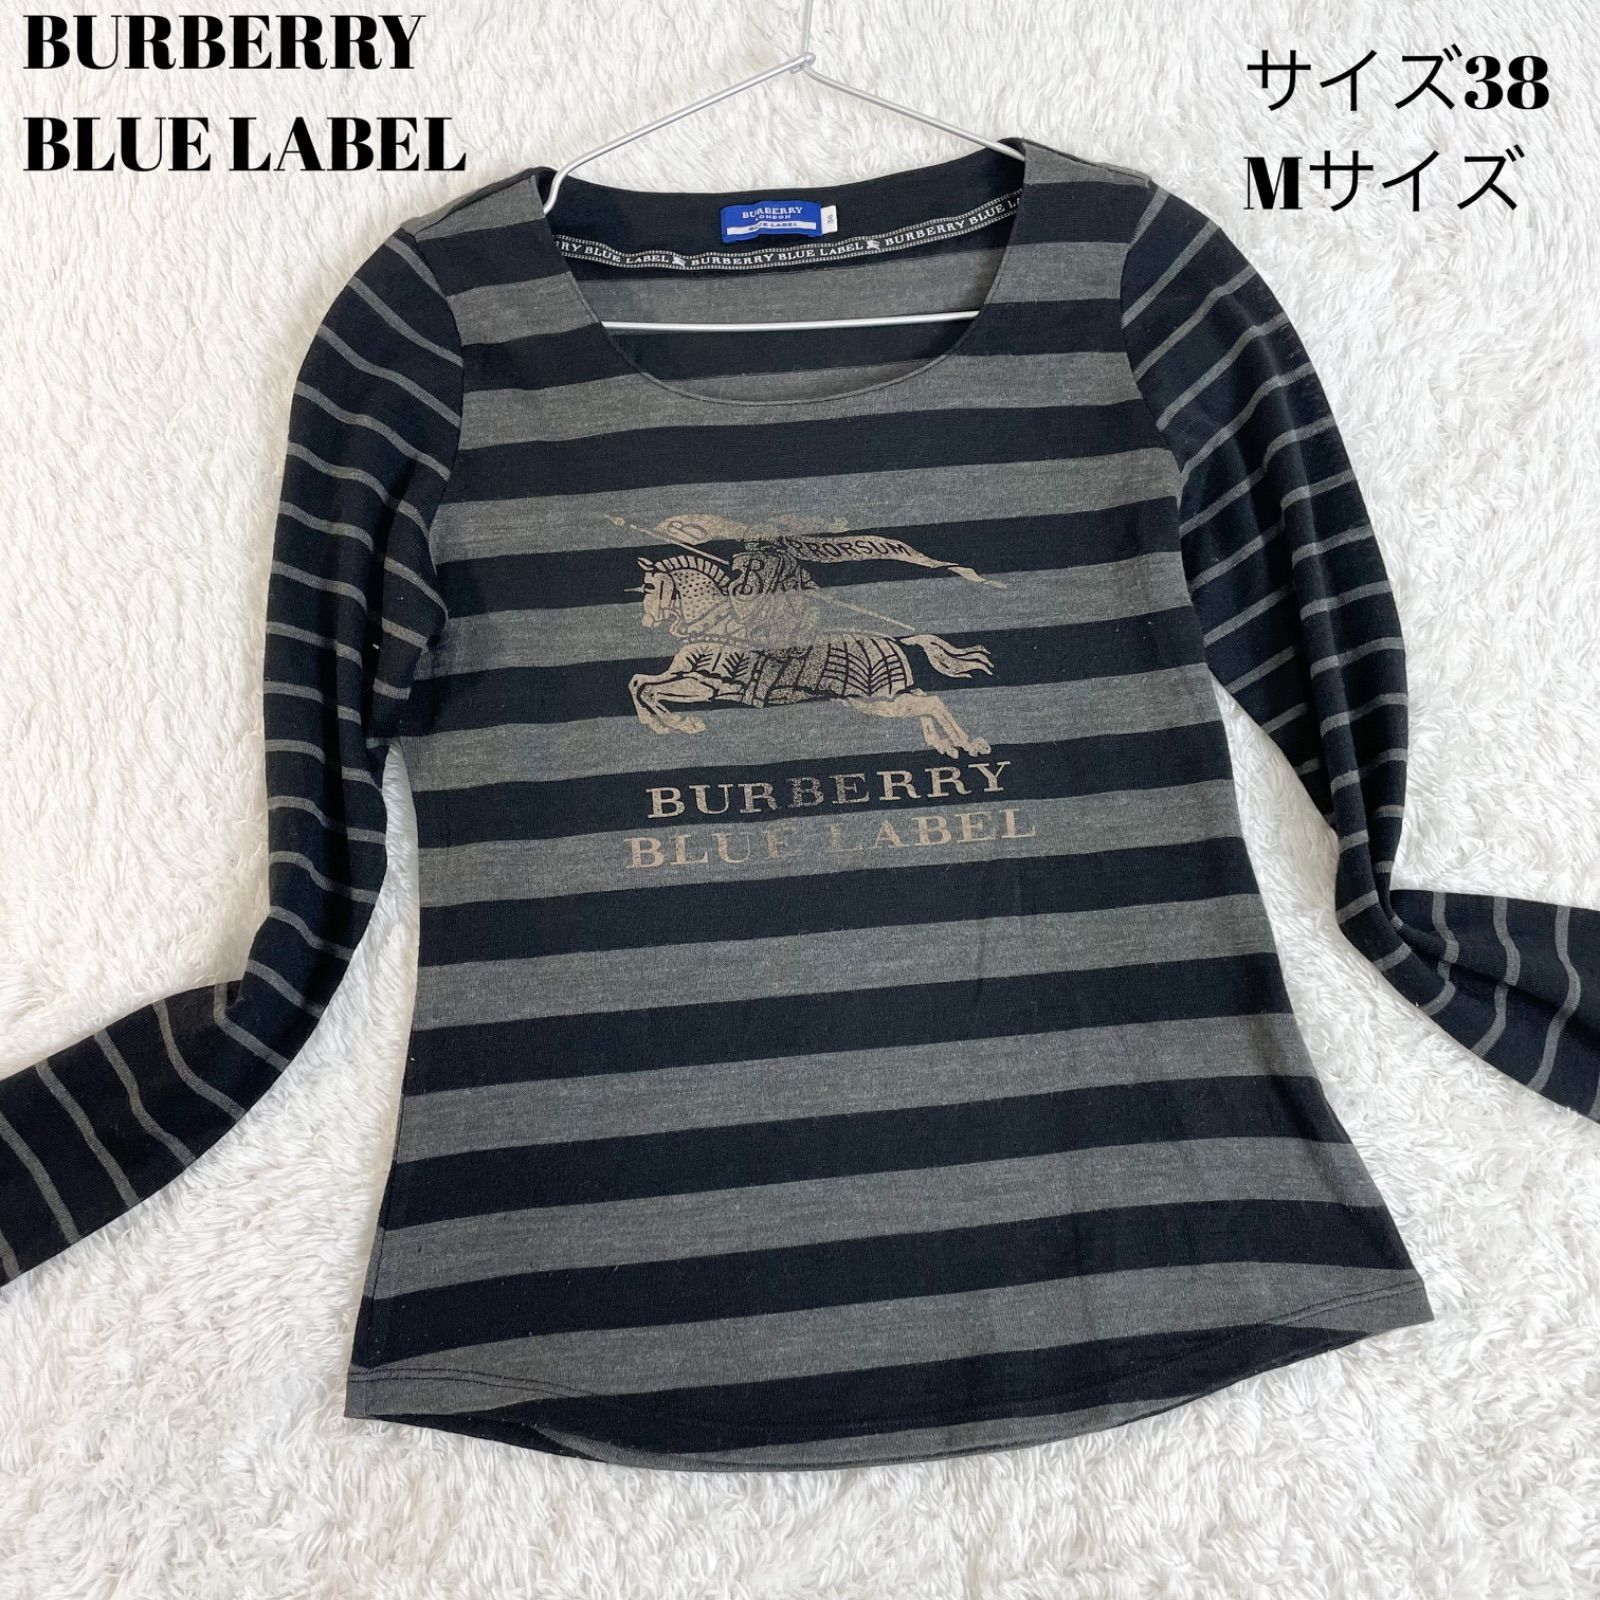 ☆バーバリー☆ブルーレーベル☆超美品コート☆サイズ38ジャケット/アウター